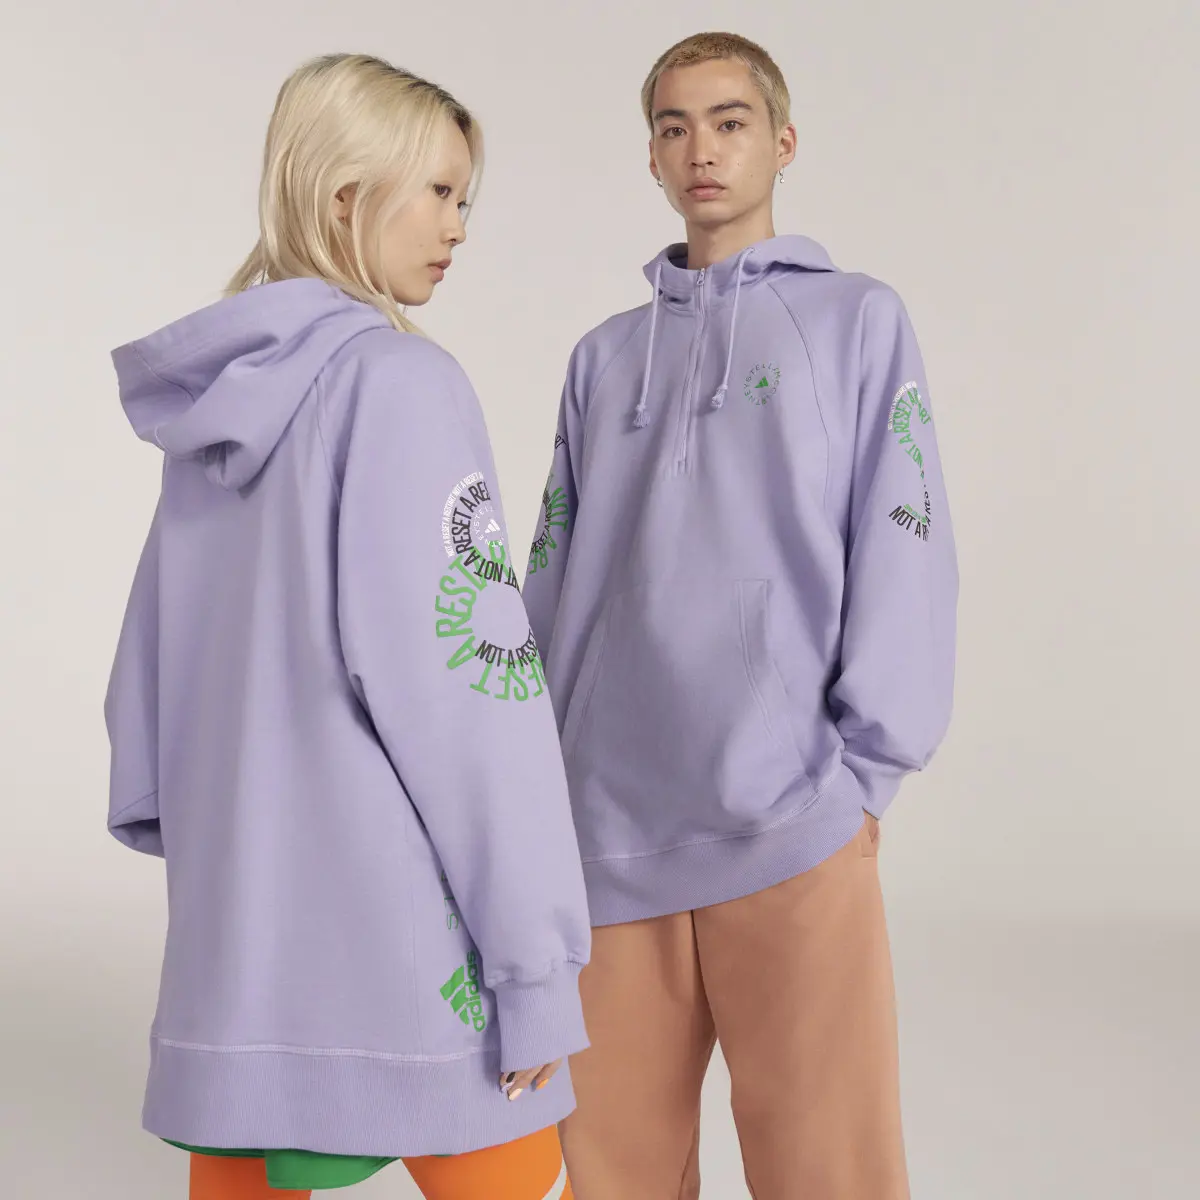 Adidas by Stella McCartney Pull On- Gender Neutral. 1